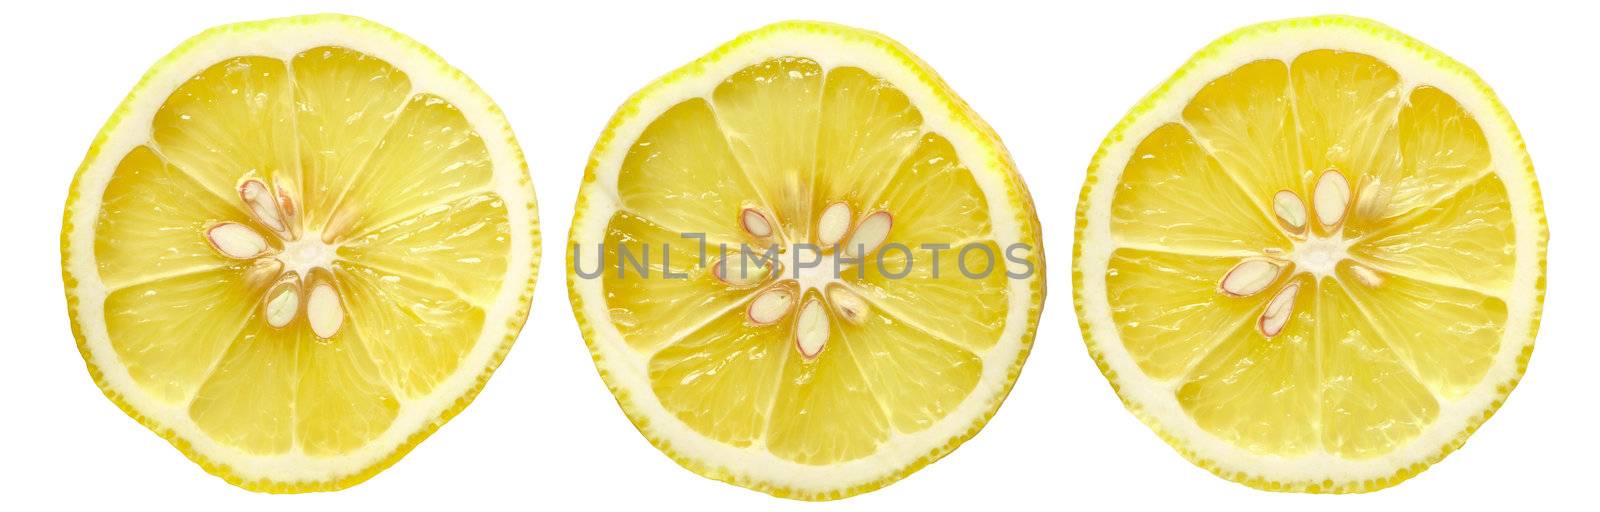 sliced lemon by zkruger